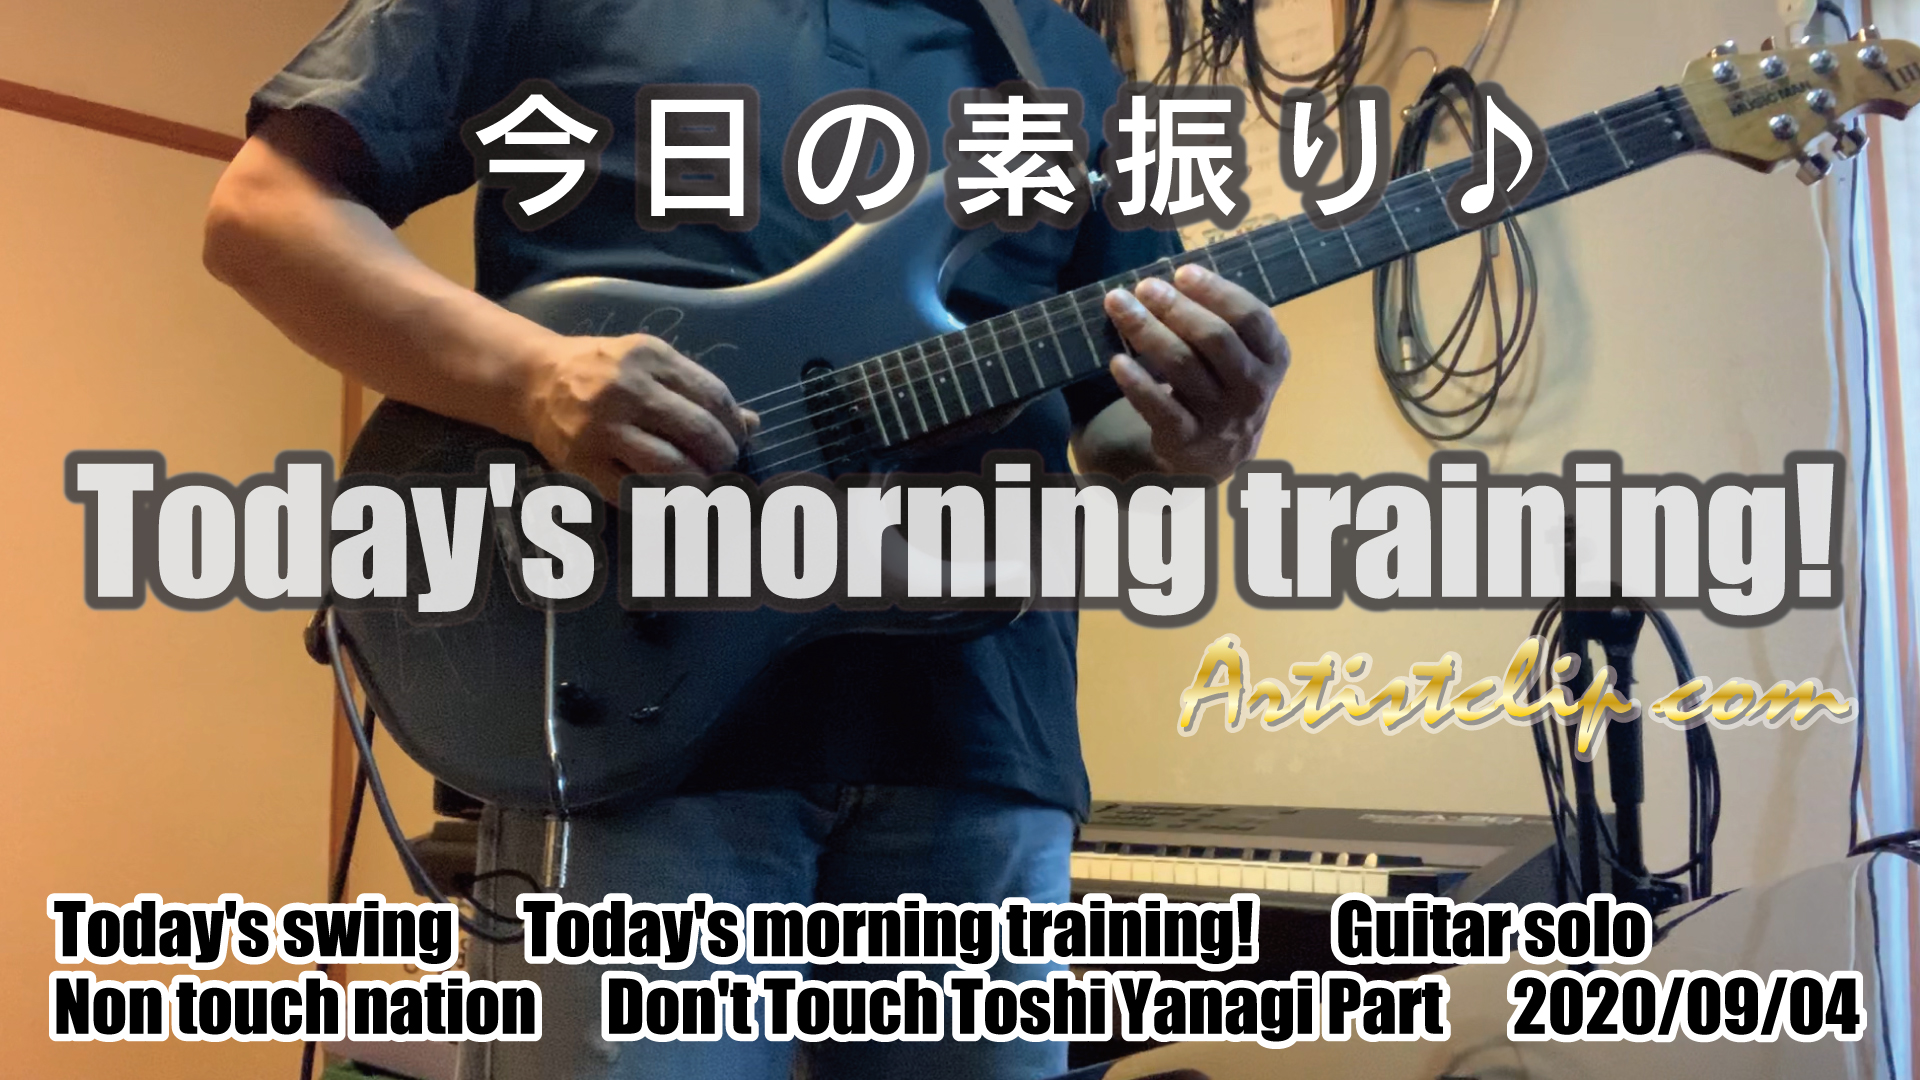 2020-09-04 Today’s morning training 今朝の素振り！ 今日もがんばろーおー 千里の道も！